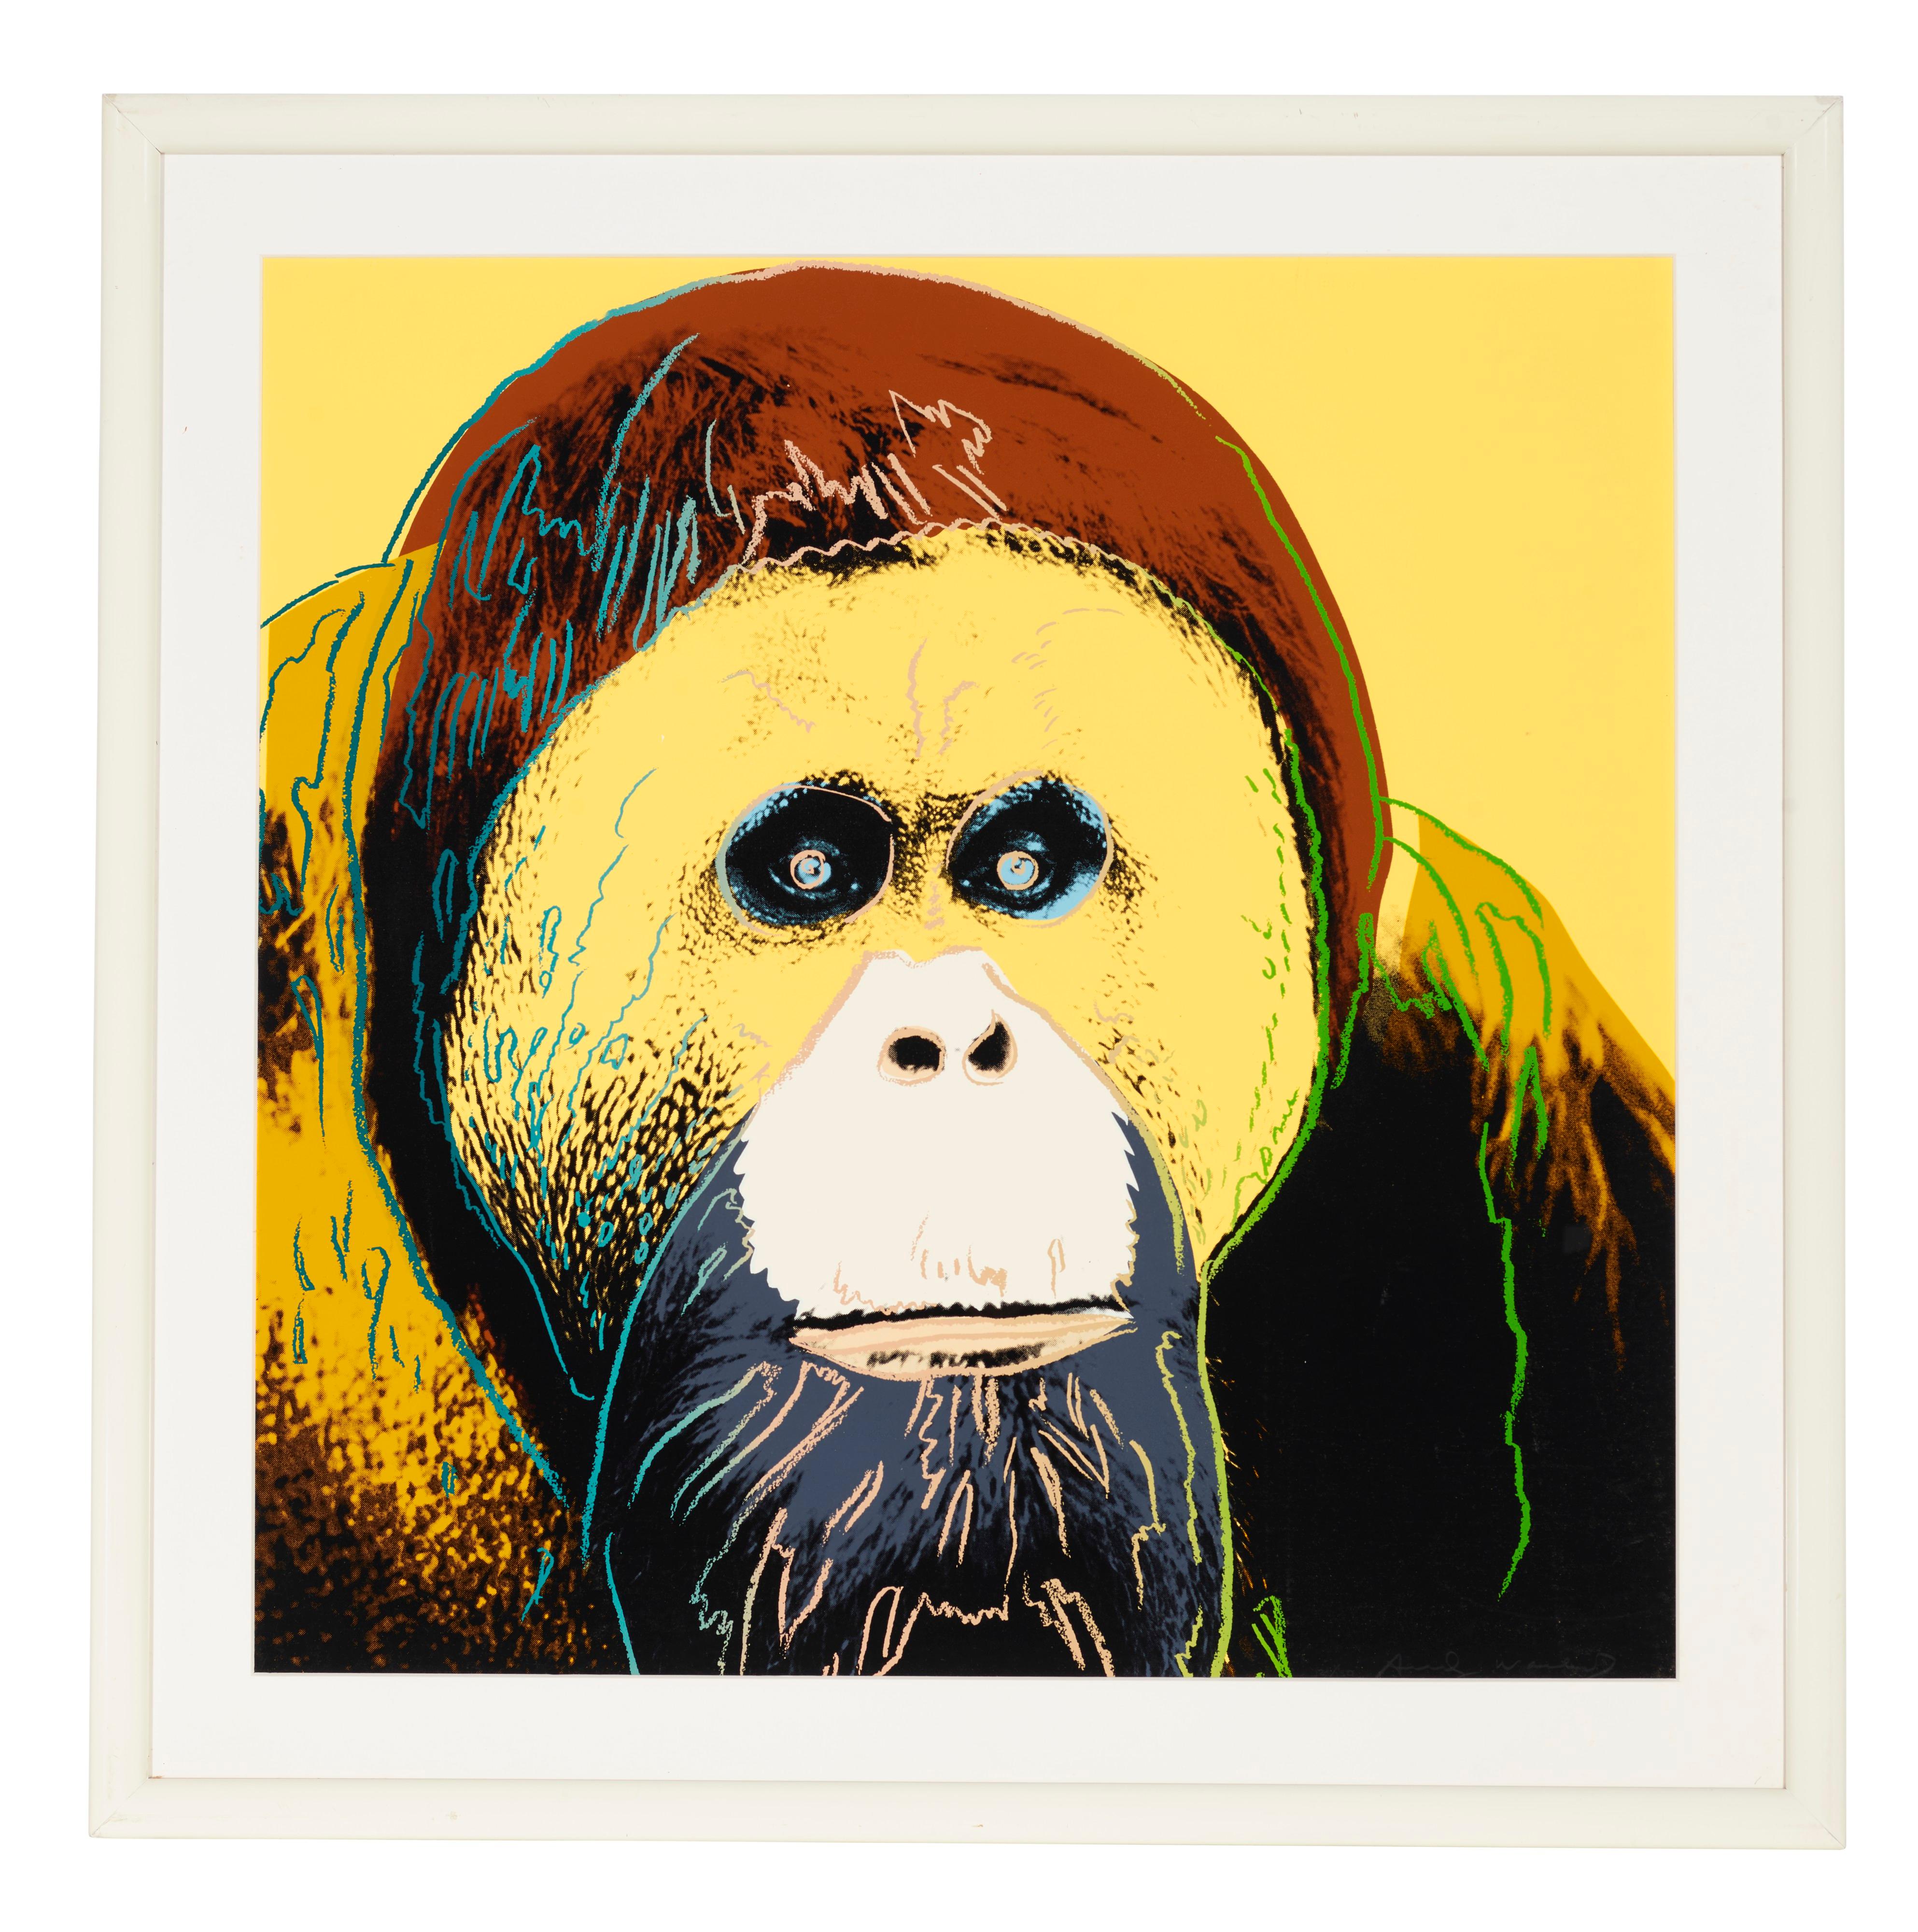 Orangutan, Endangered Species F&S II.299 - Print by Andy Warhol